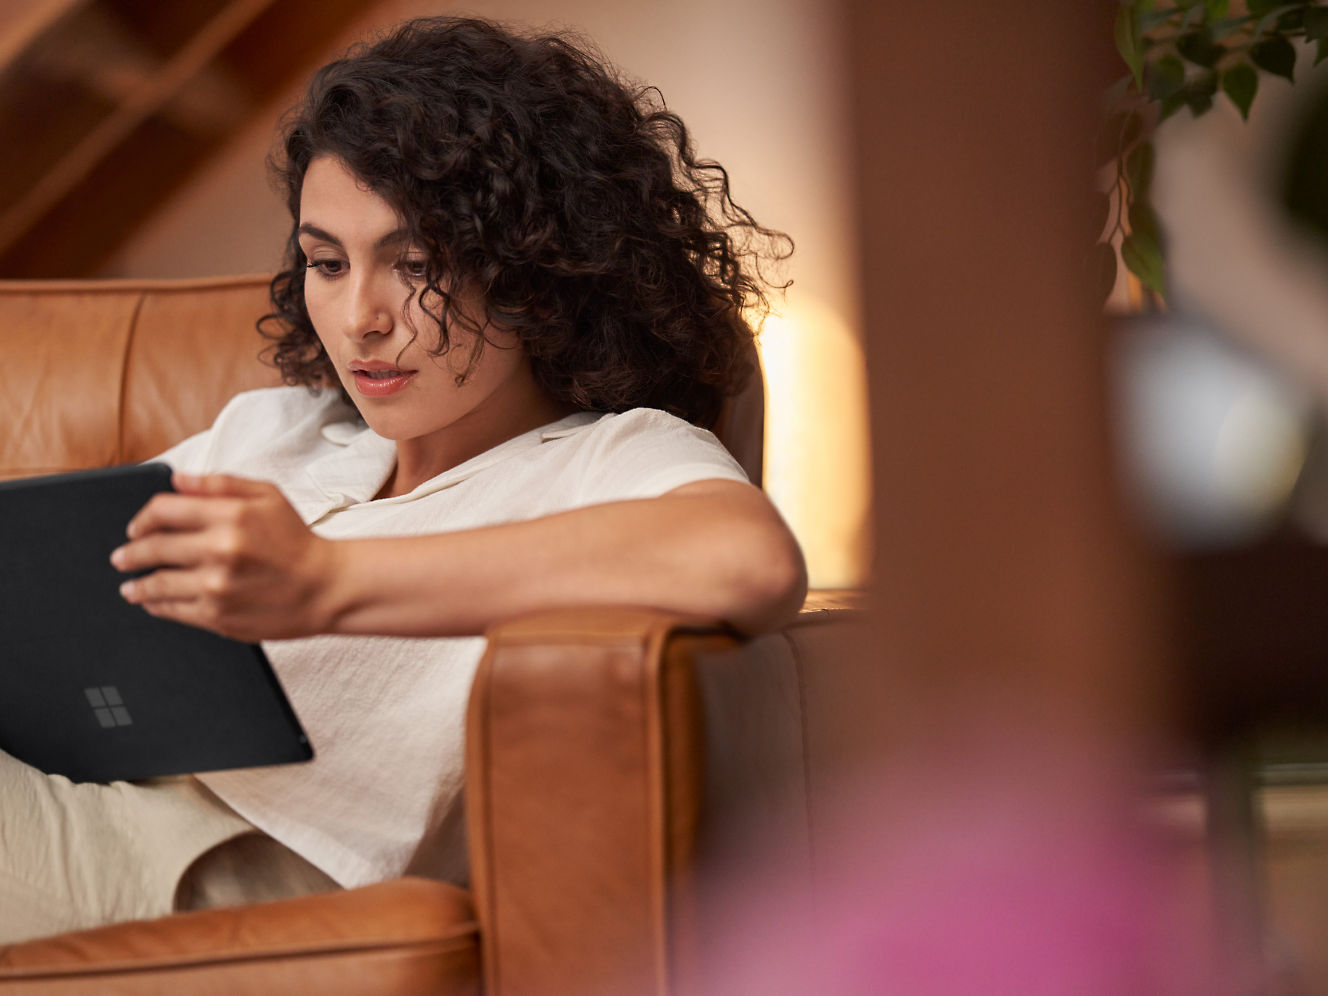 Une femme aux cheveux bouclés lisant attentivement sur une tablette, assise dans un fauteuil en cuir marron à l’intérieur.